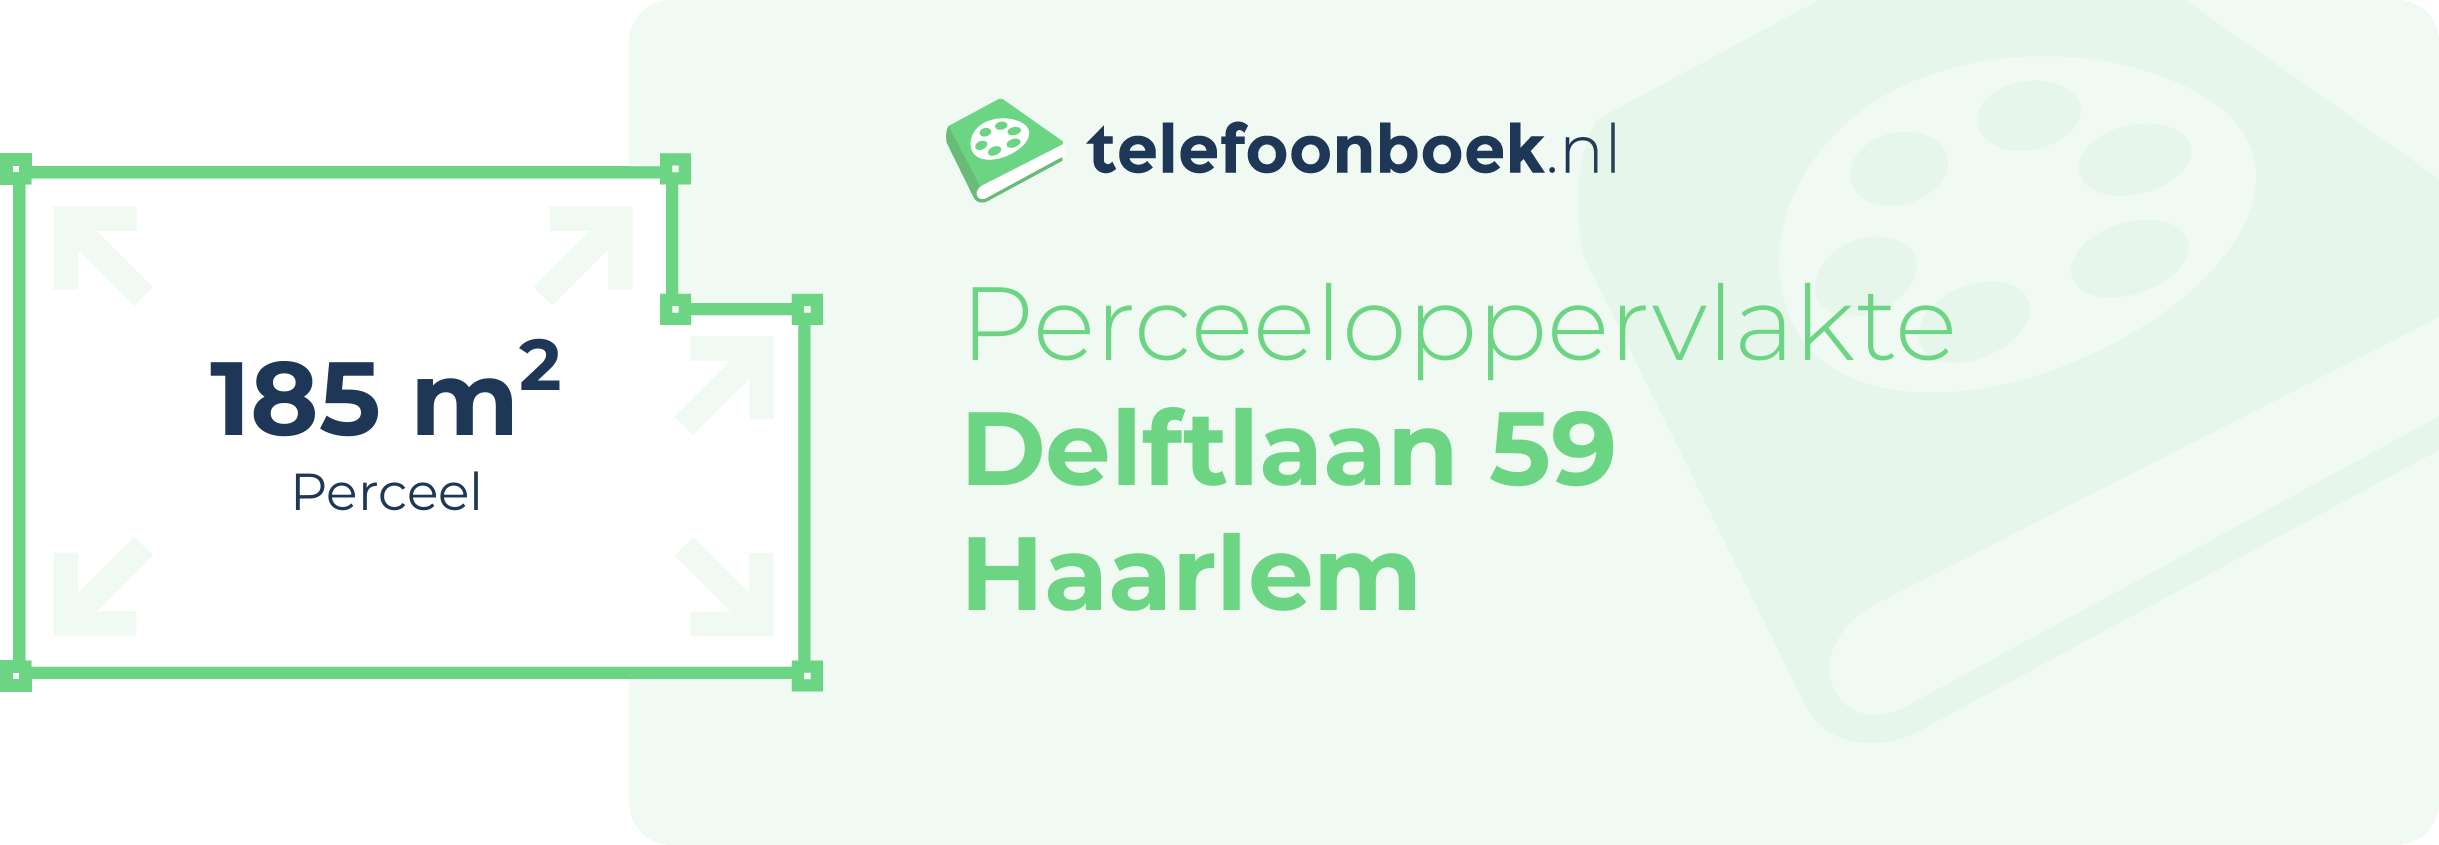 Perceeloppervlakte Delftlaan 59 Haarlem